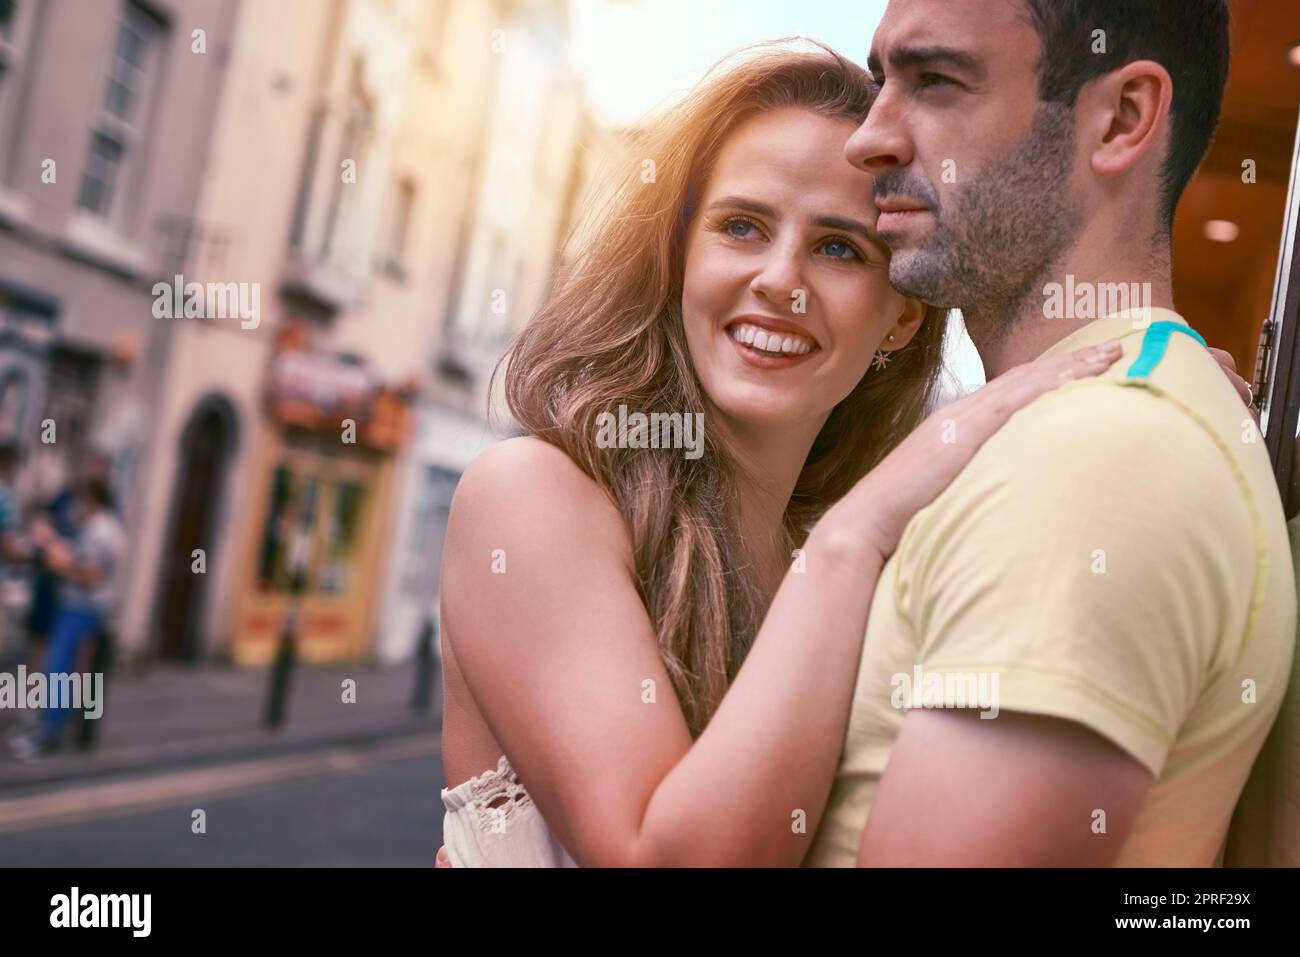 Die Stadt mit den Augen der Liebe zu sehen. Ein glückliches junges Paar, das einen liebevollen Moment miteinander teilt, während es eine fremde Stadt erkundet. Stockfoto